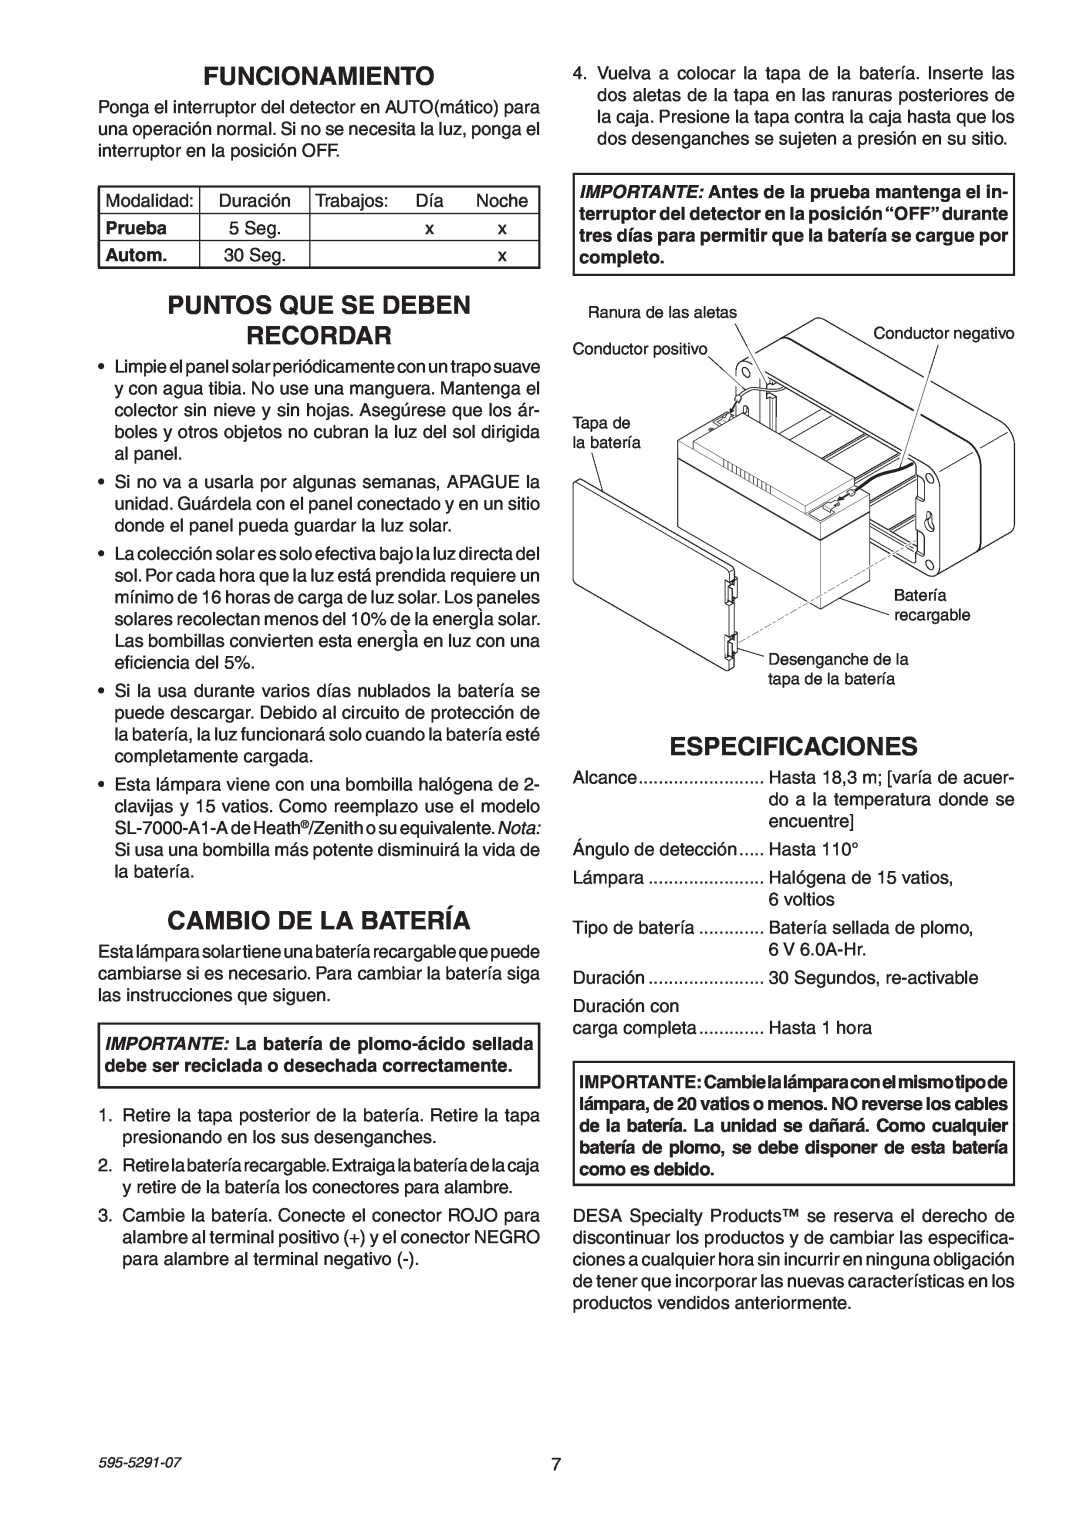 Heath Zenith SL-7001 manual Funcionamiento, Puntos Que Se Deben Recordar, Cambio De La Batería, Especificaciones 